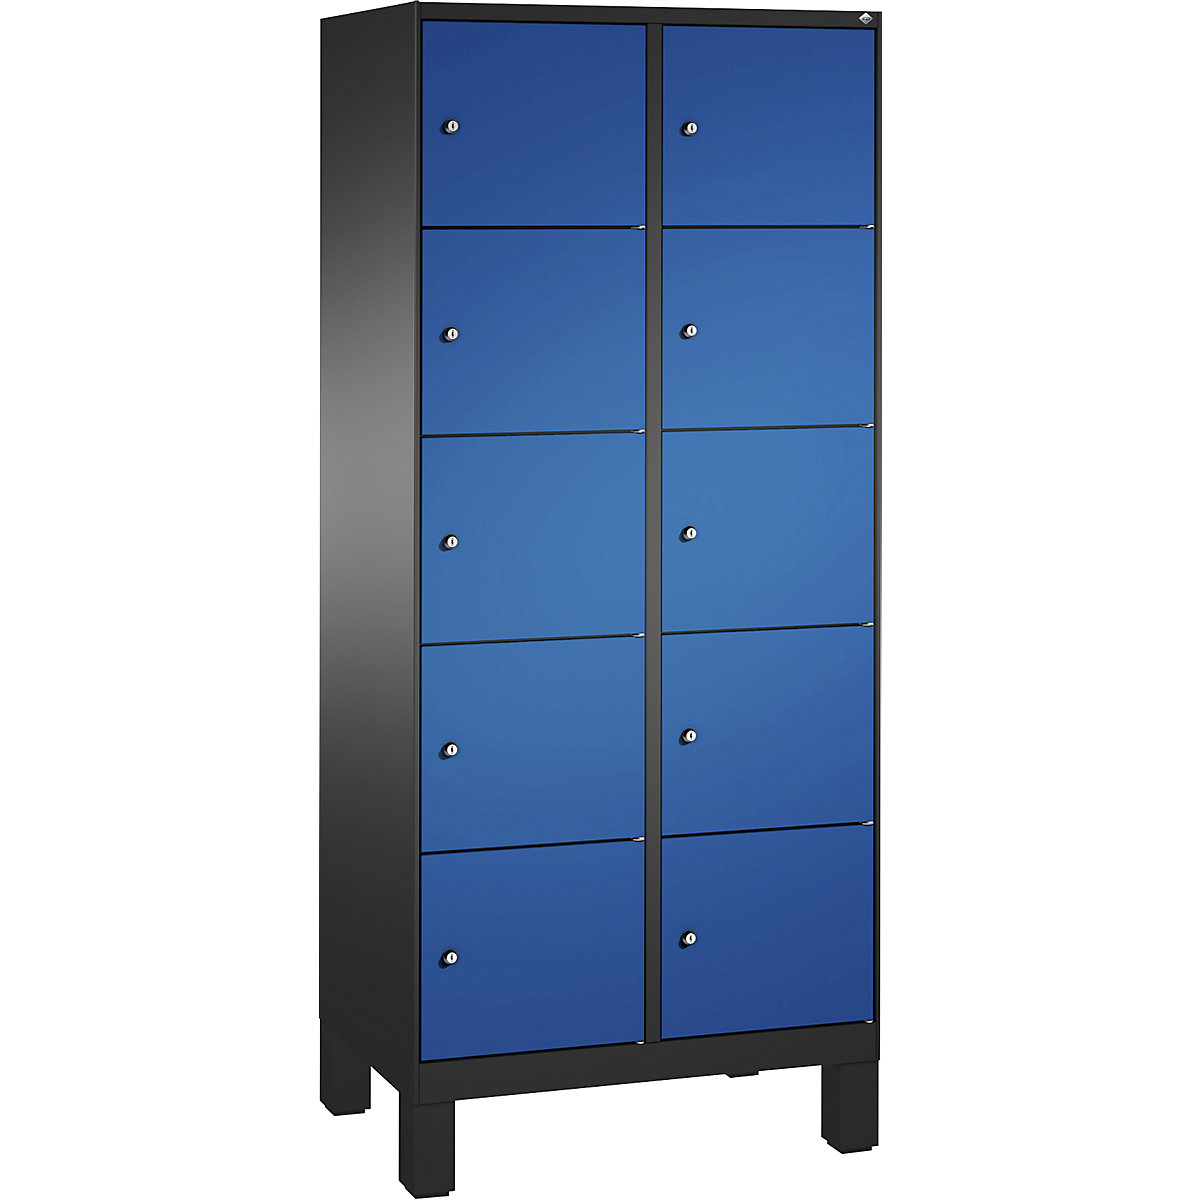 Armoire à casiers sur pieds EVOLO – C+P, 2 compartiments, 5 casiers chacun, largeur compartiments 400 mm, gris noir / bleu gentiane-13